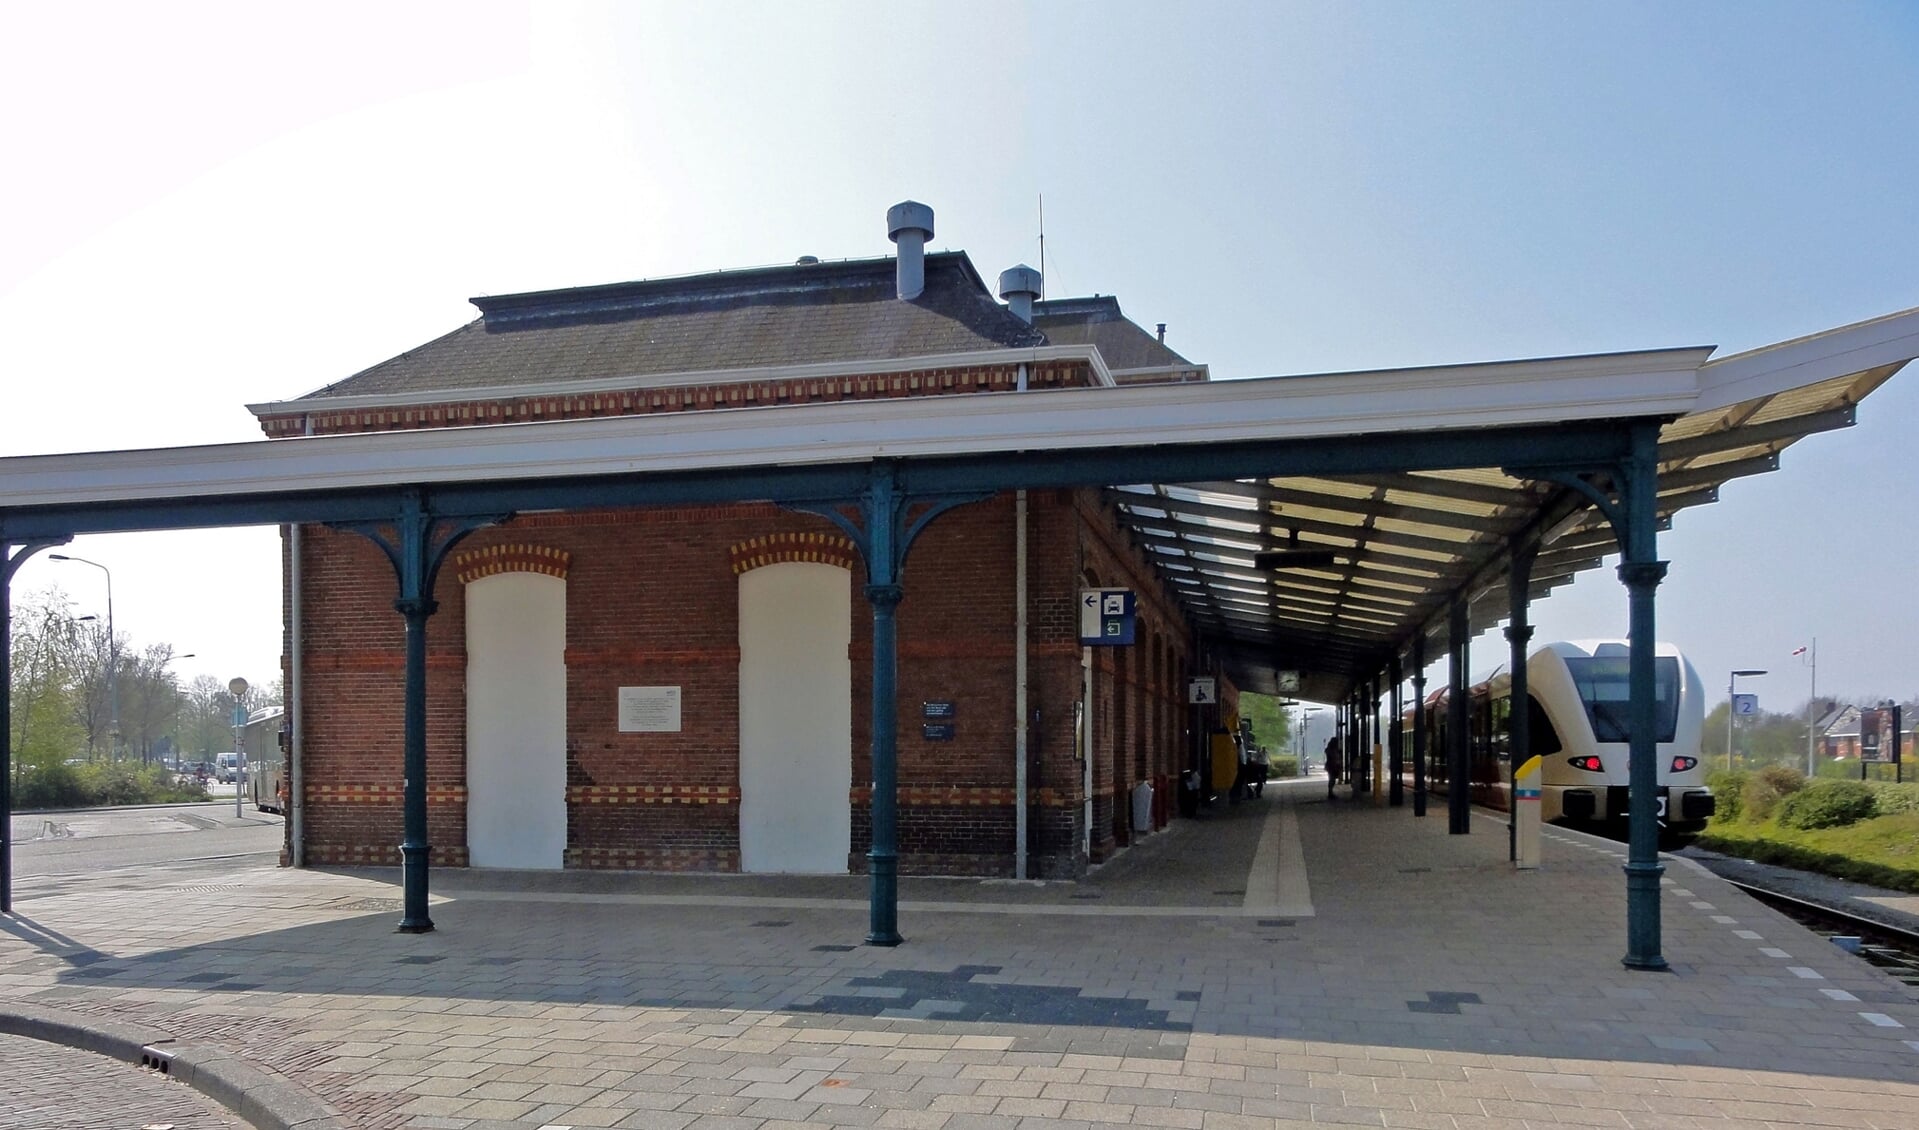 Ook het station in Delfzijl scoort met een 7,2 een ruime voldoende (archieffoto).